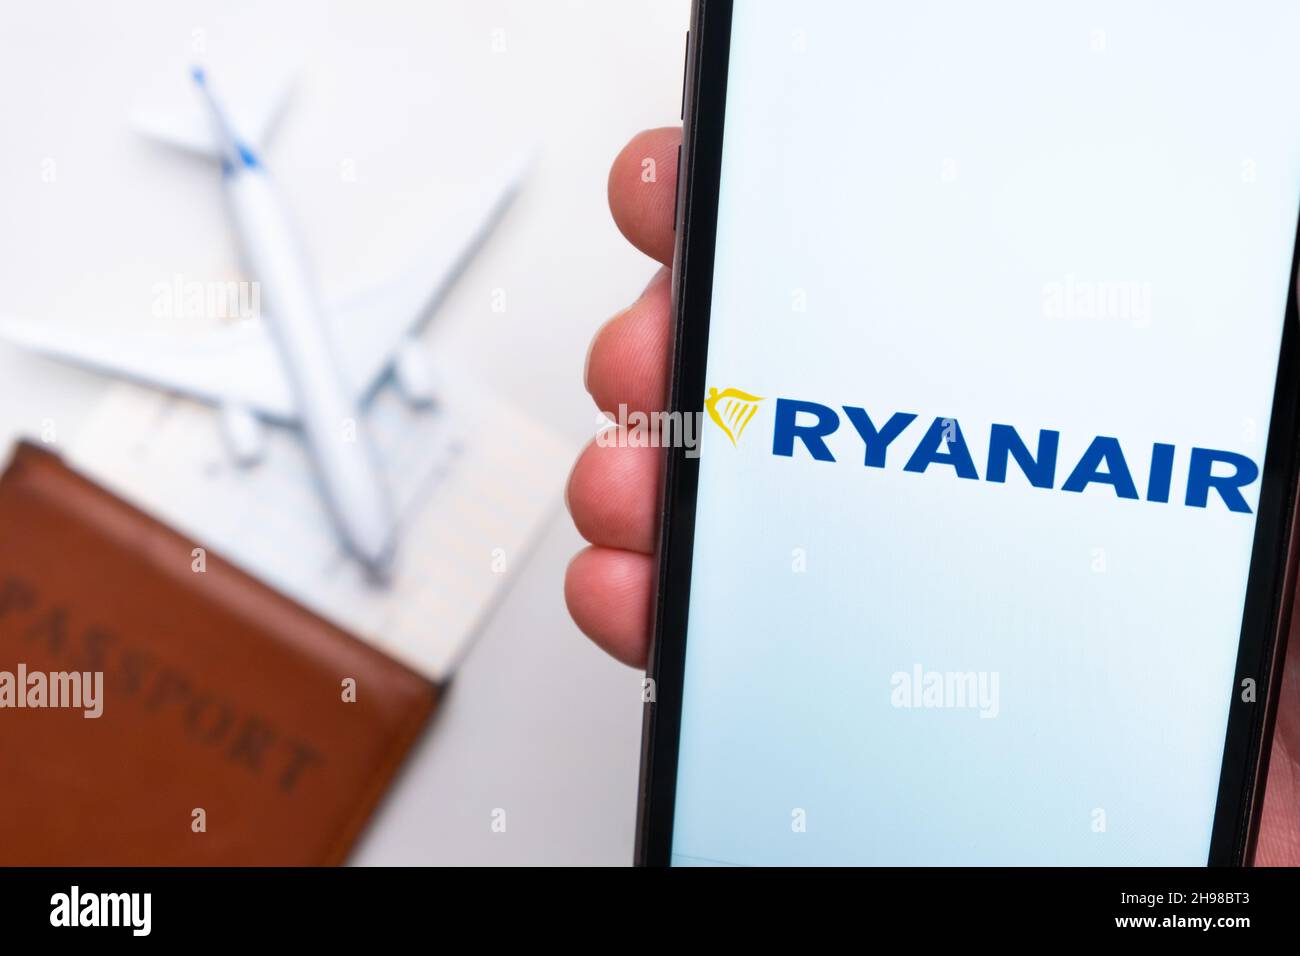 Application mobile Ryanair Airlines.Une application mobile pratique pour  acheter des billets à l'aide d'un smartphone avec un avion, un passeport et  une carte d'embarquement en arrière-plan.Novembre 2021, San Francisco,  États-Unis Photo Stock -